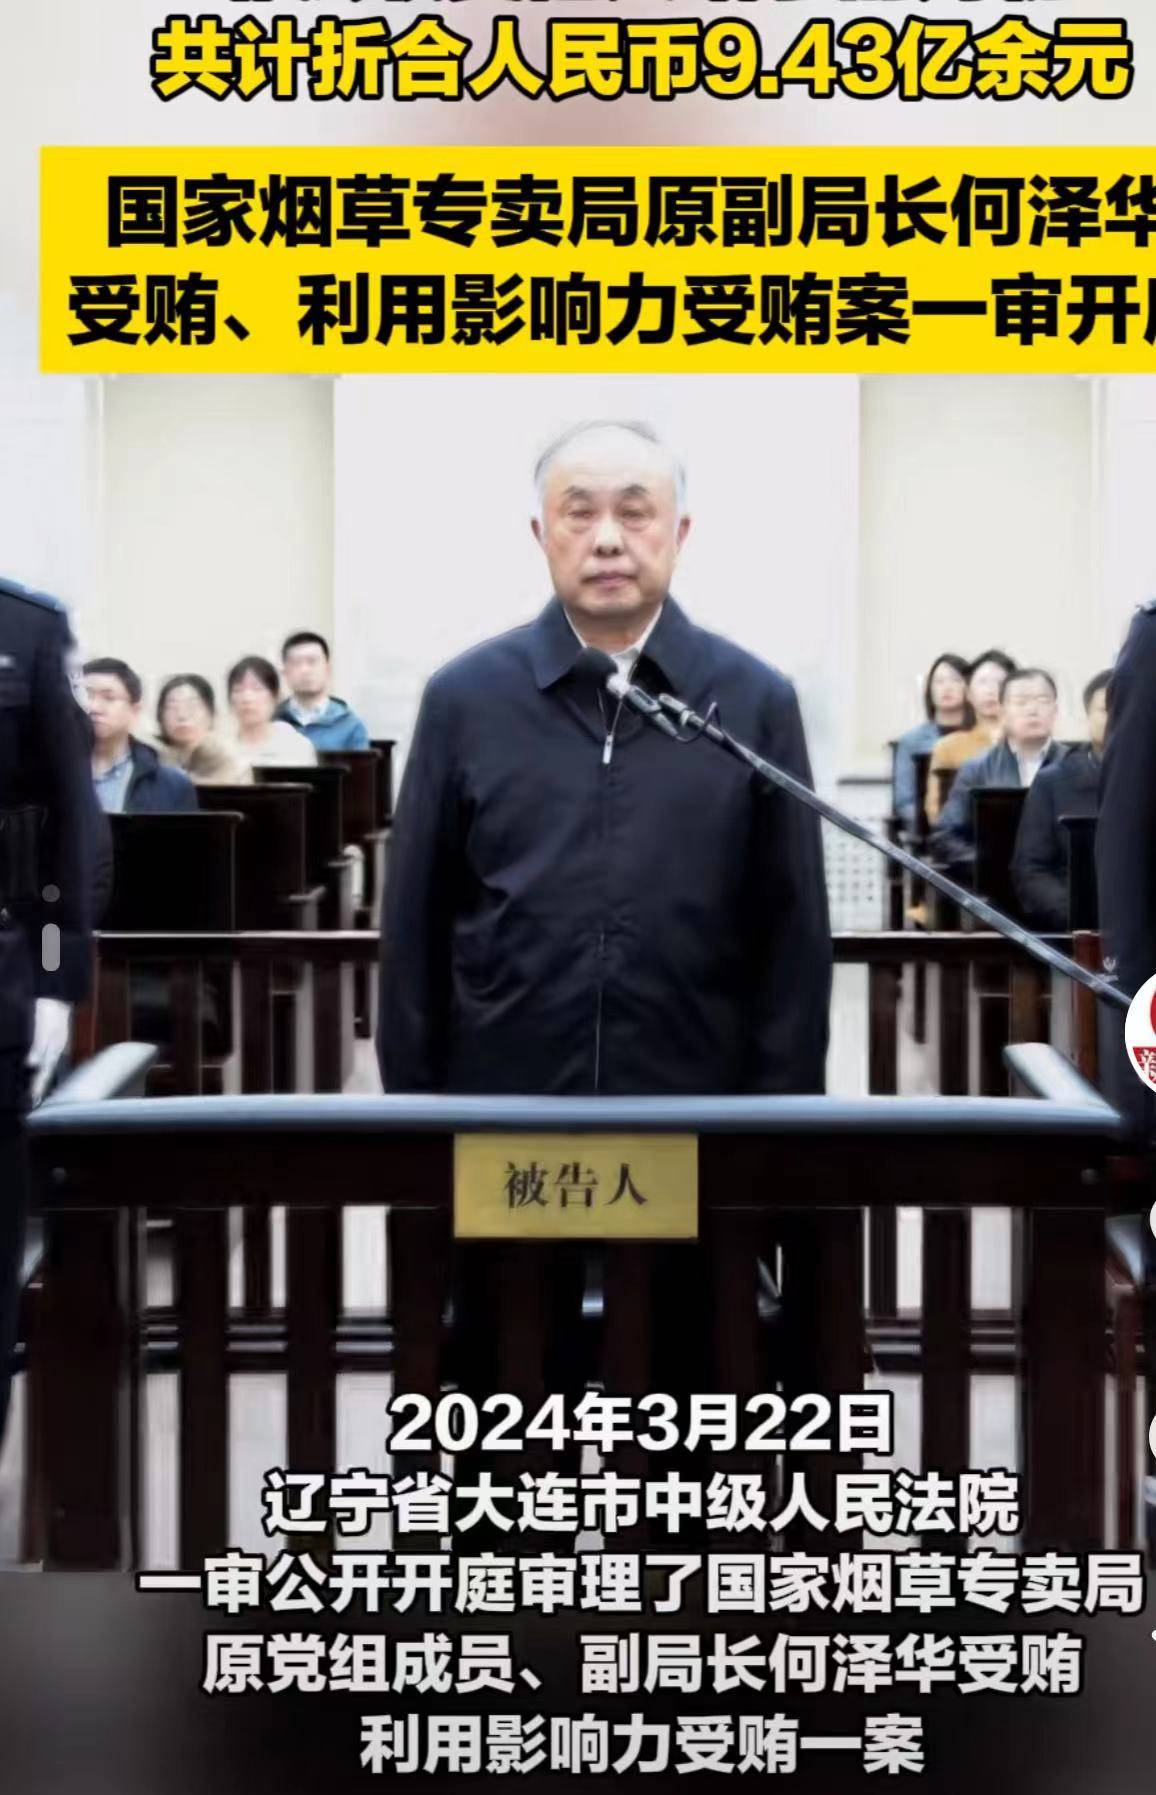 何泽华被控受贿超9亿受审,曾是国家烟草专卖局副局长